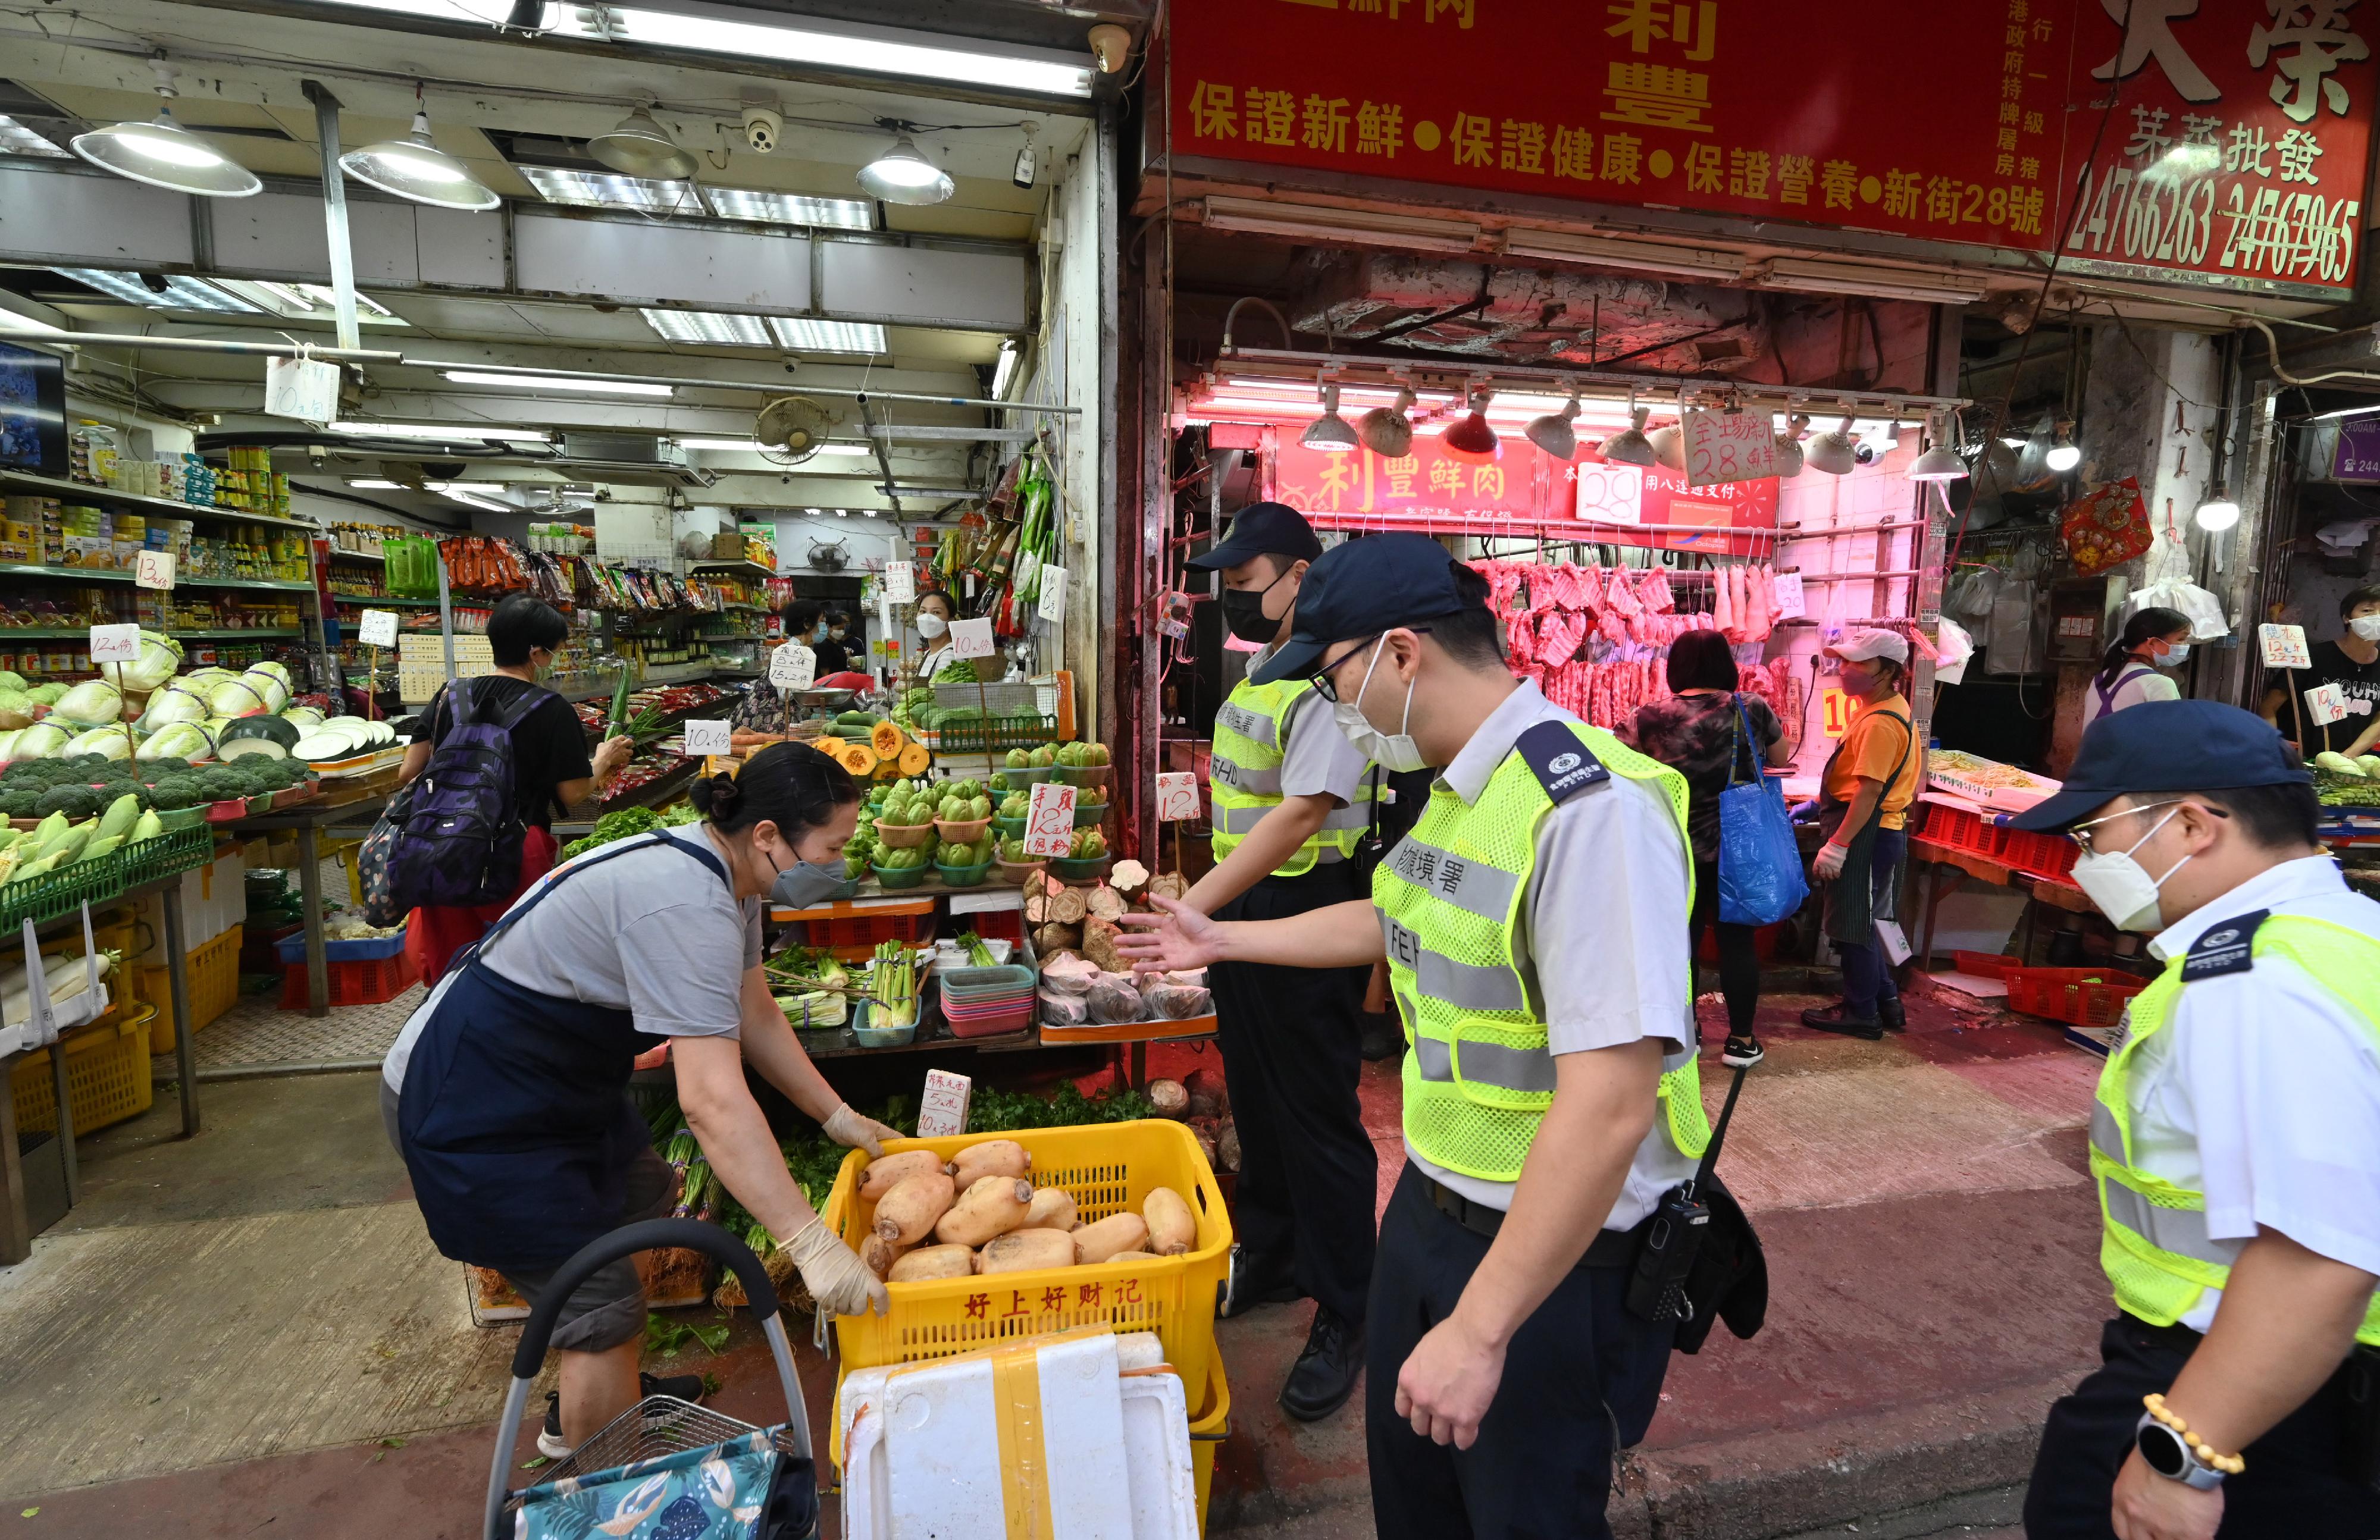 食物環境衞生署（食環署）發言人今日（十月七日）表示，食環署與香港警務處自十月三日起在多區展開連串嚴厲執法行動打擊非法店鋪阻街活動。圖示食環署人員昨日（十月六日）在元朗的行動。